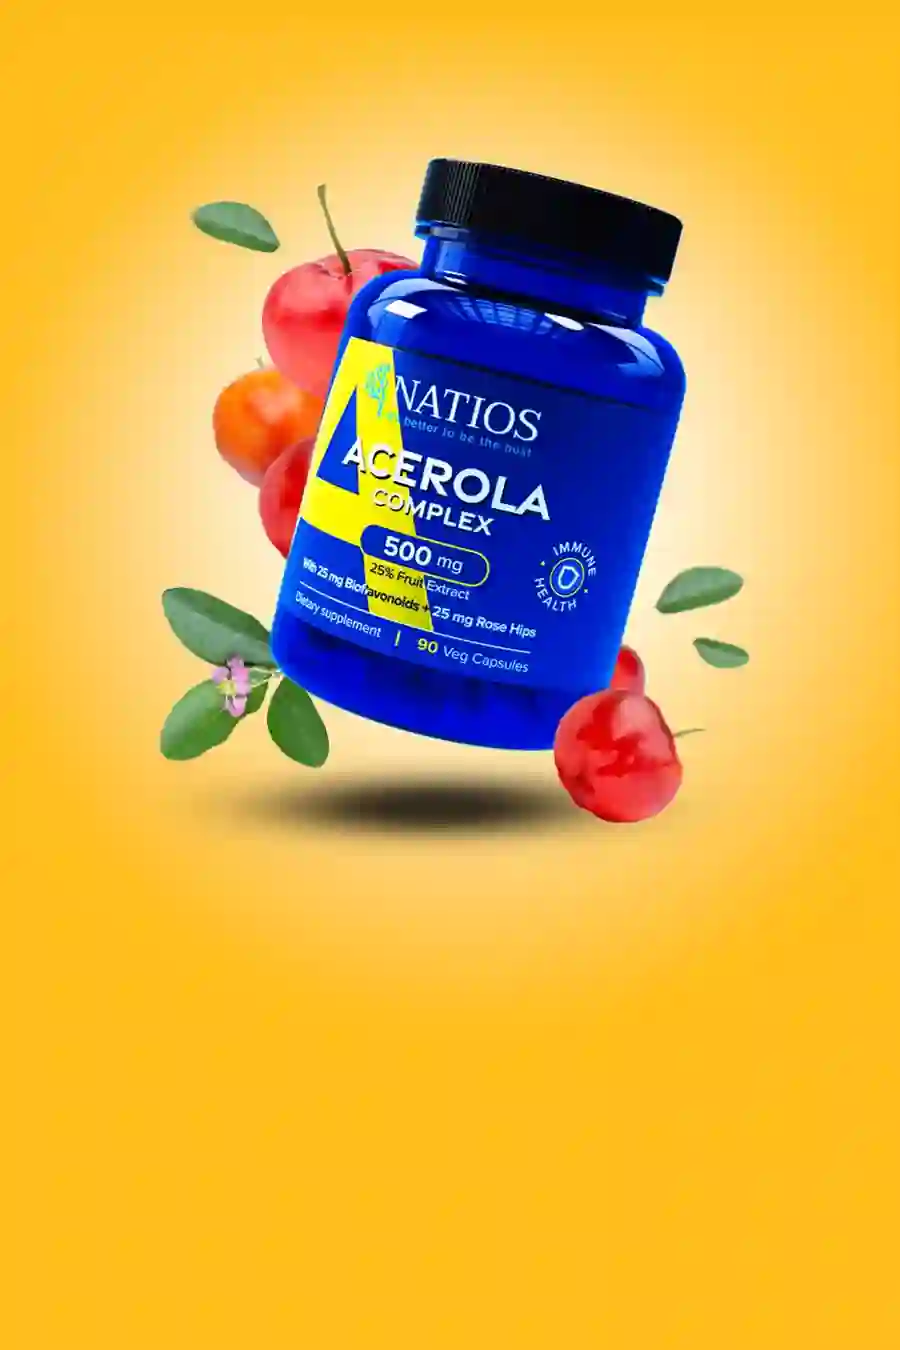 Natios Acerola Vitamin C